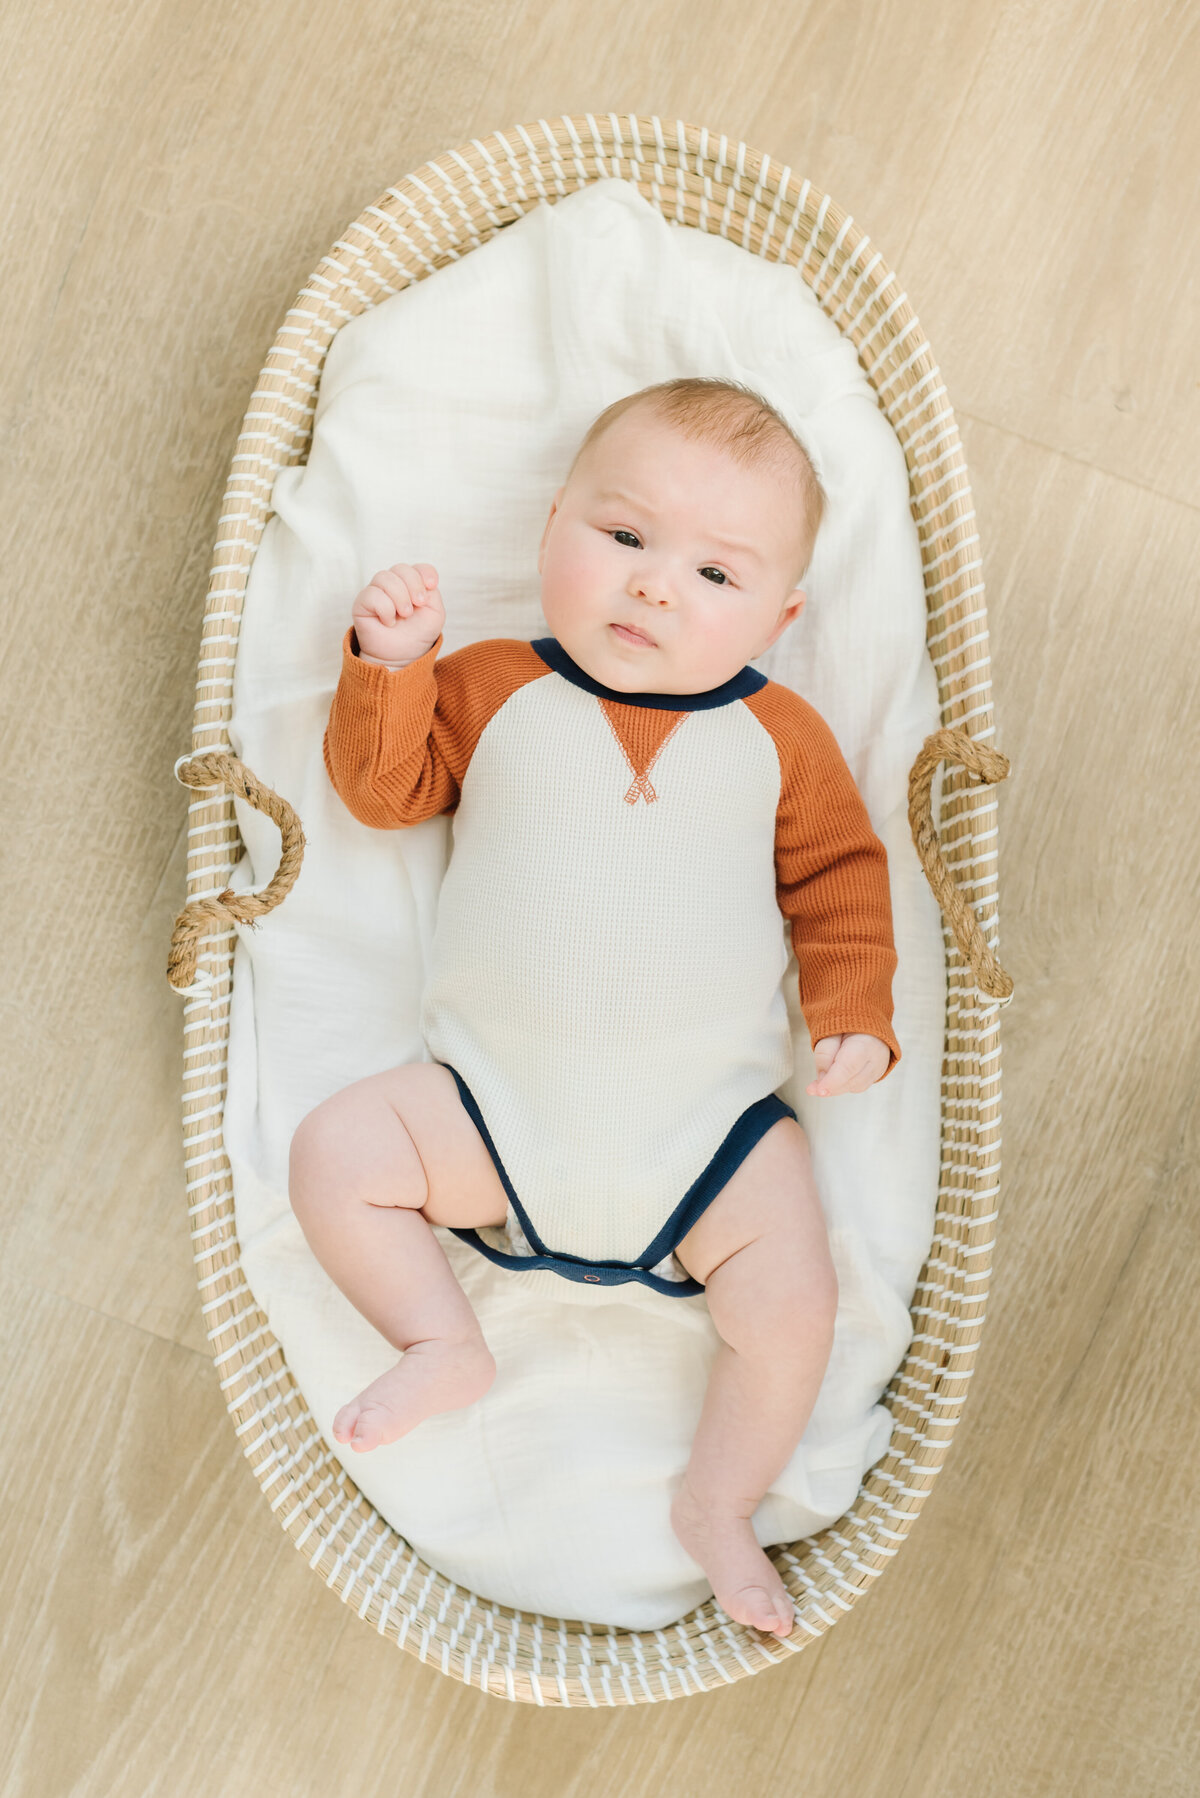 Baby in orange and white onesie in basket - Washington DC Newborn Photographer